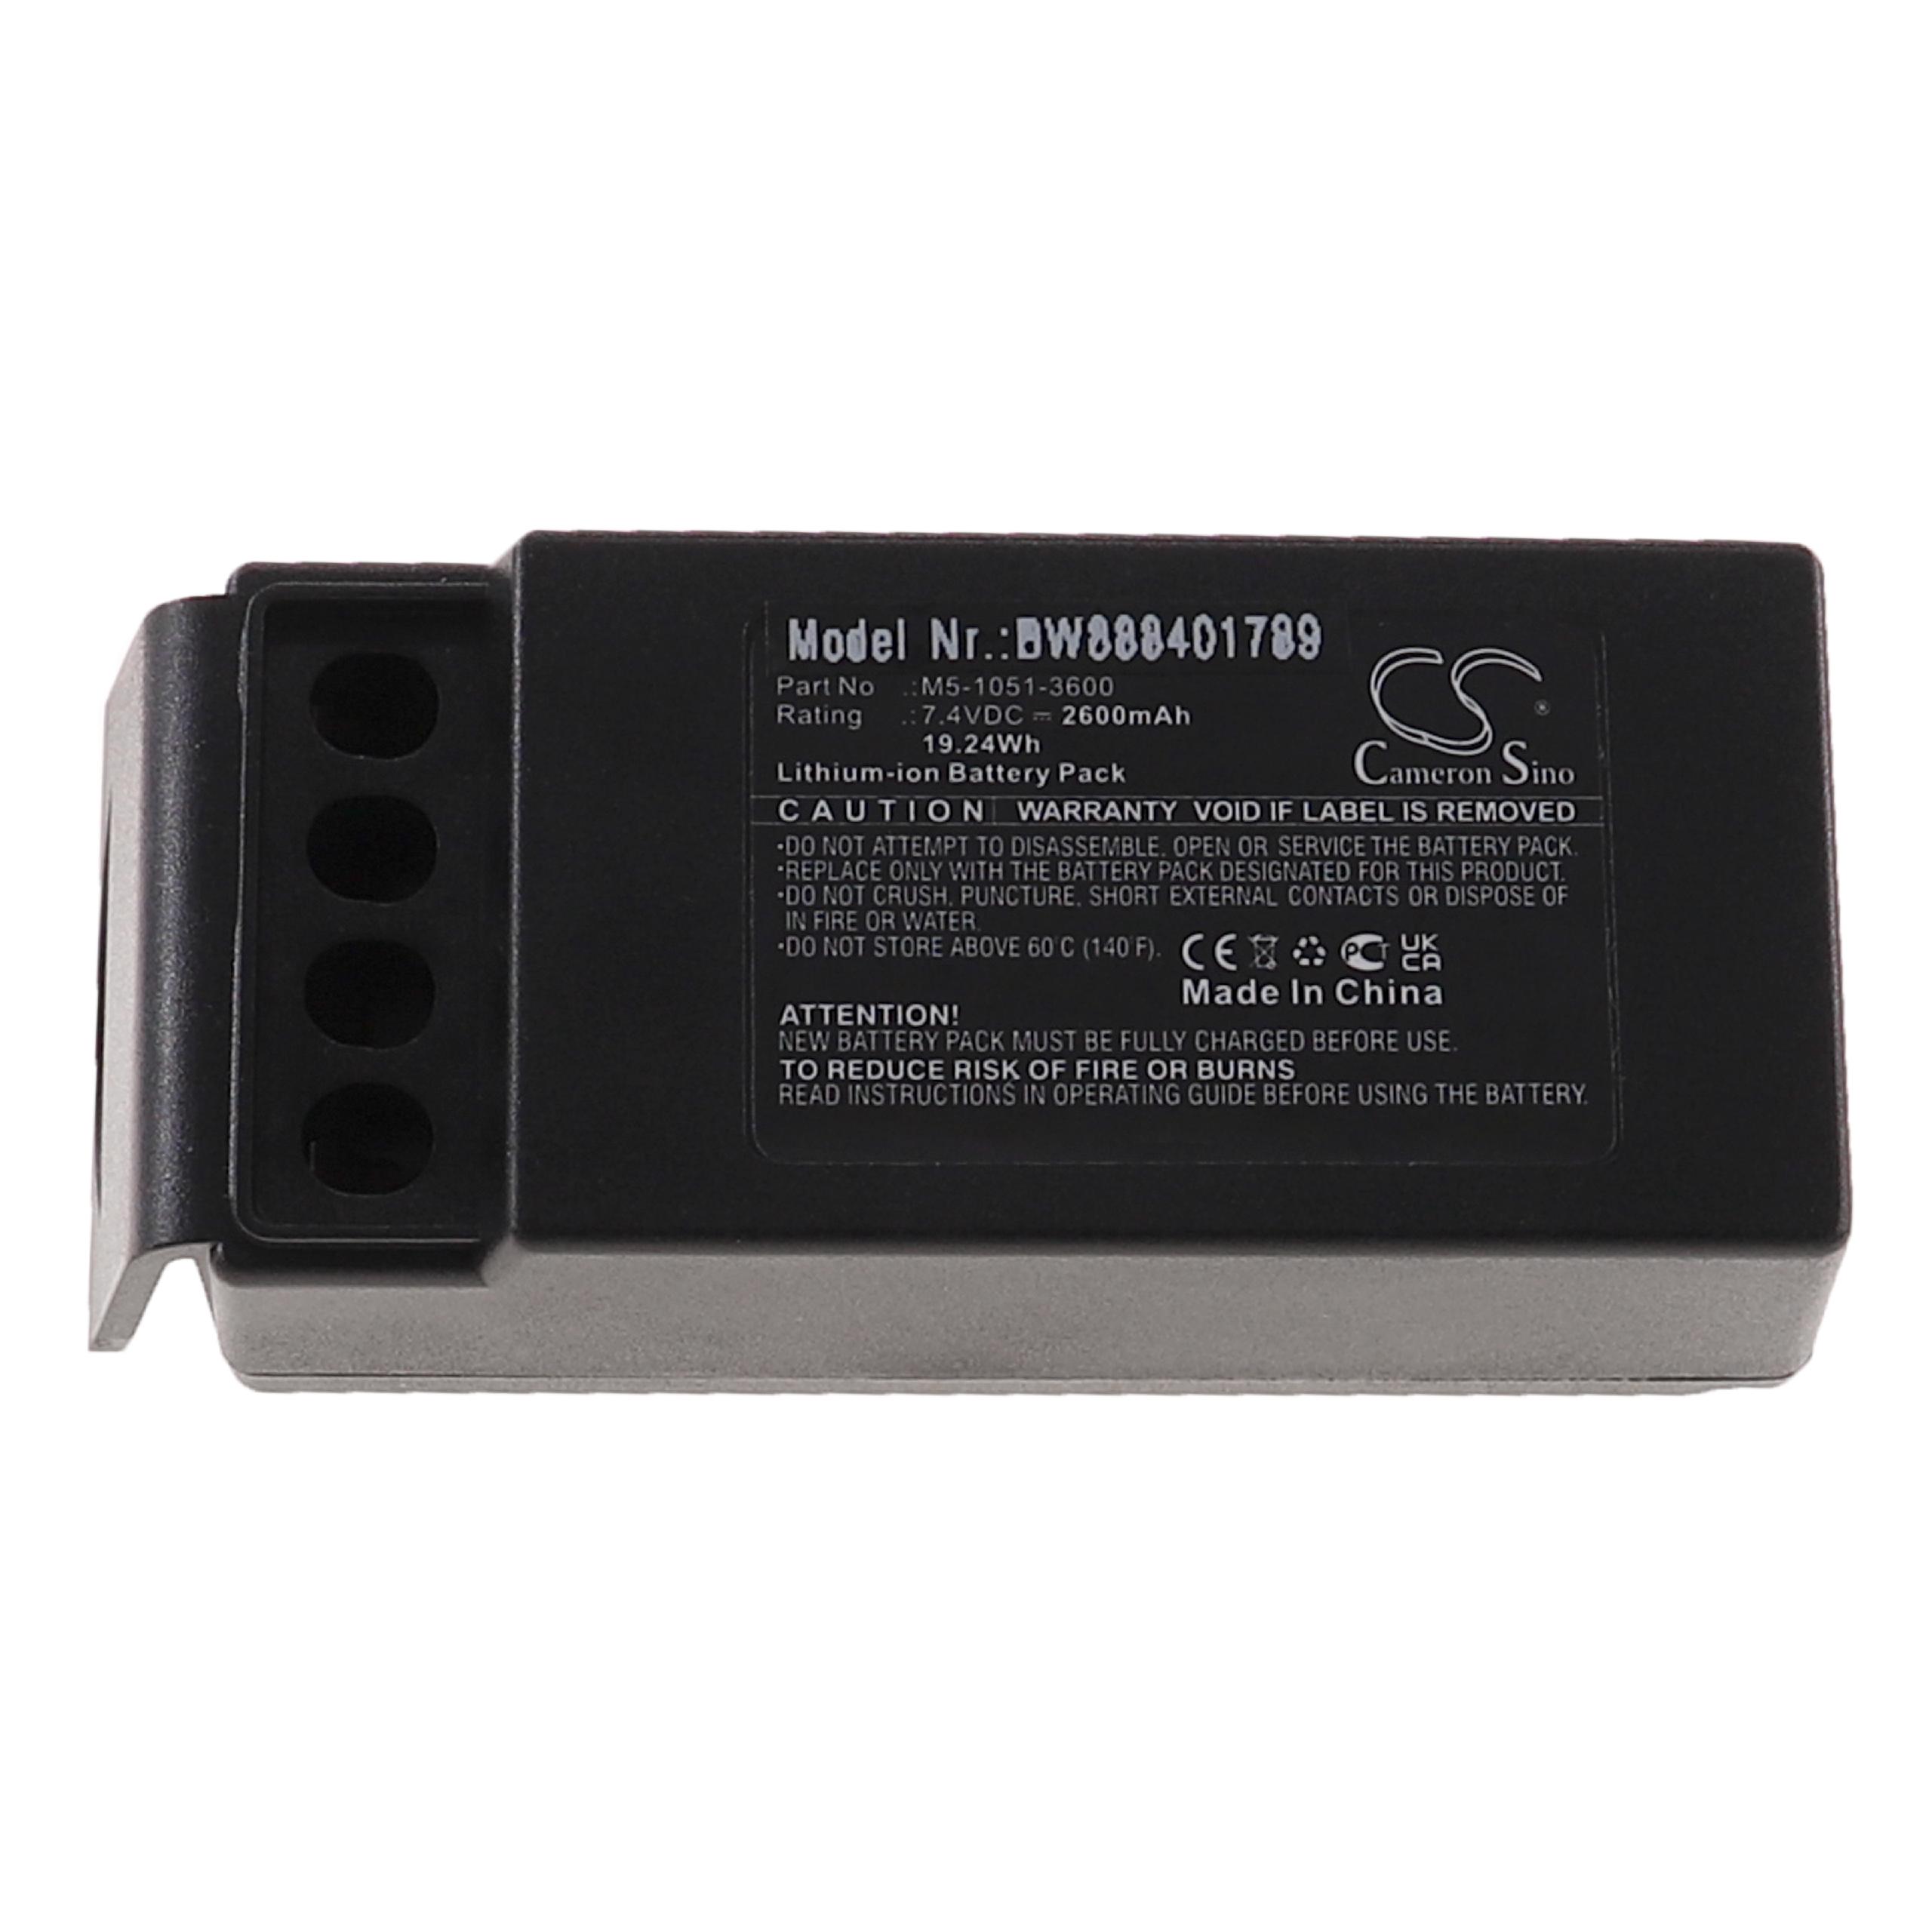 Batería reemplaza Cavotec M5-1051-3600 para mando distancia industrial Cavotec - 2600 mAh 7,4 V Li-Ion